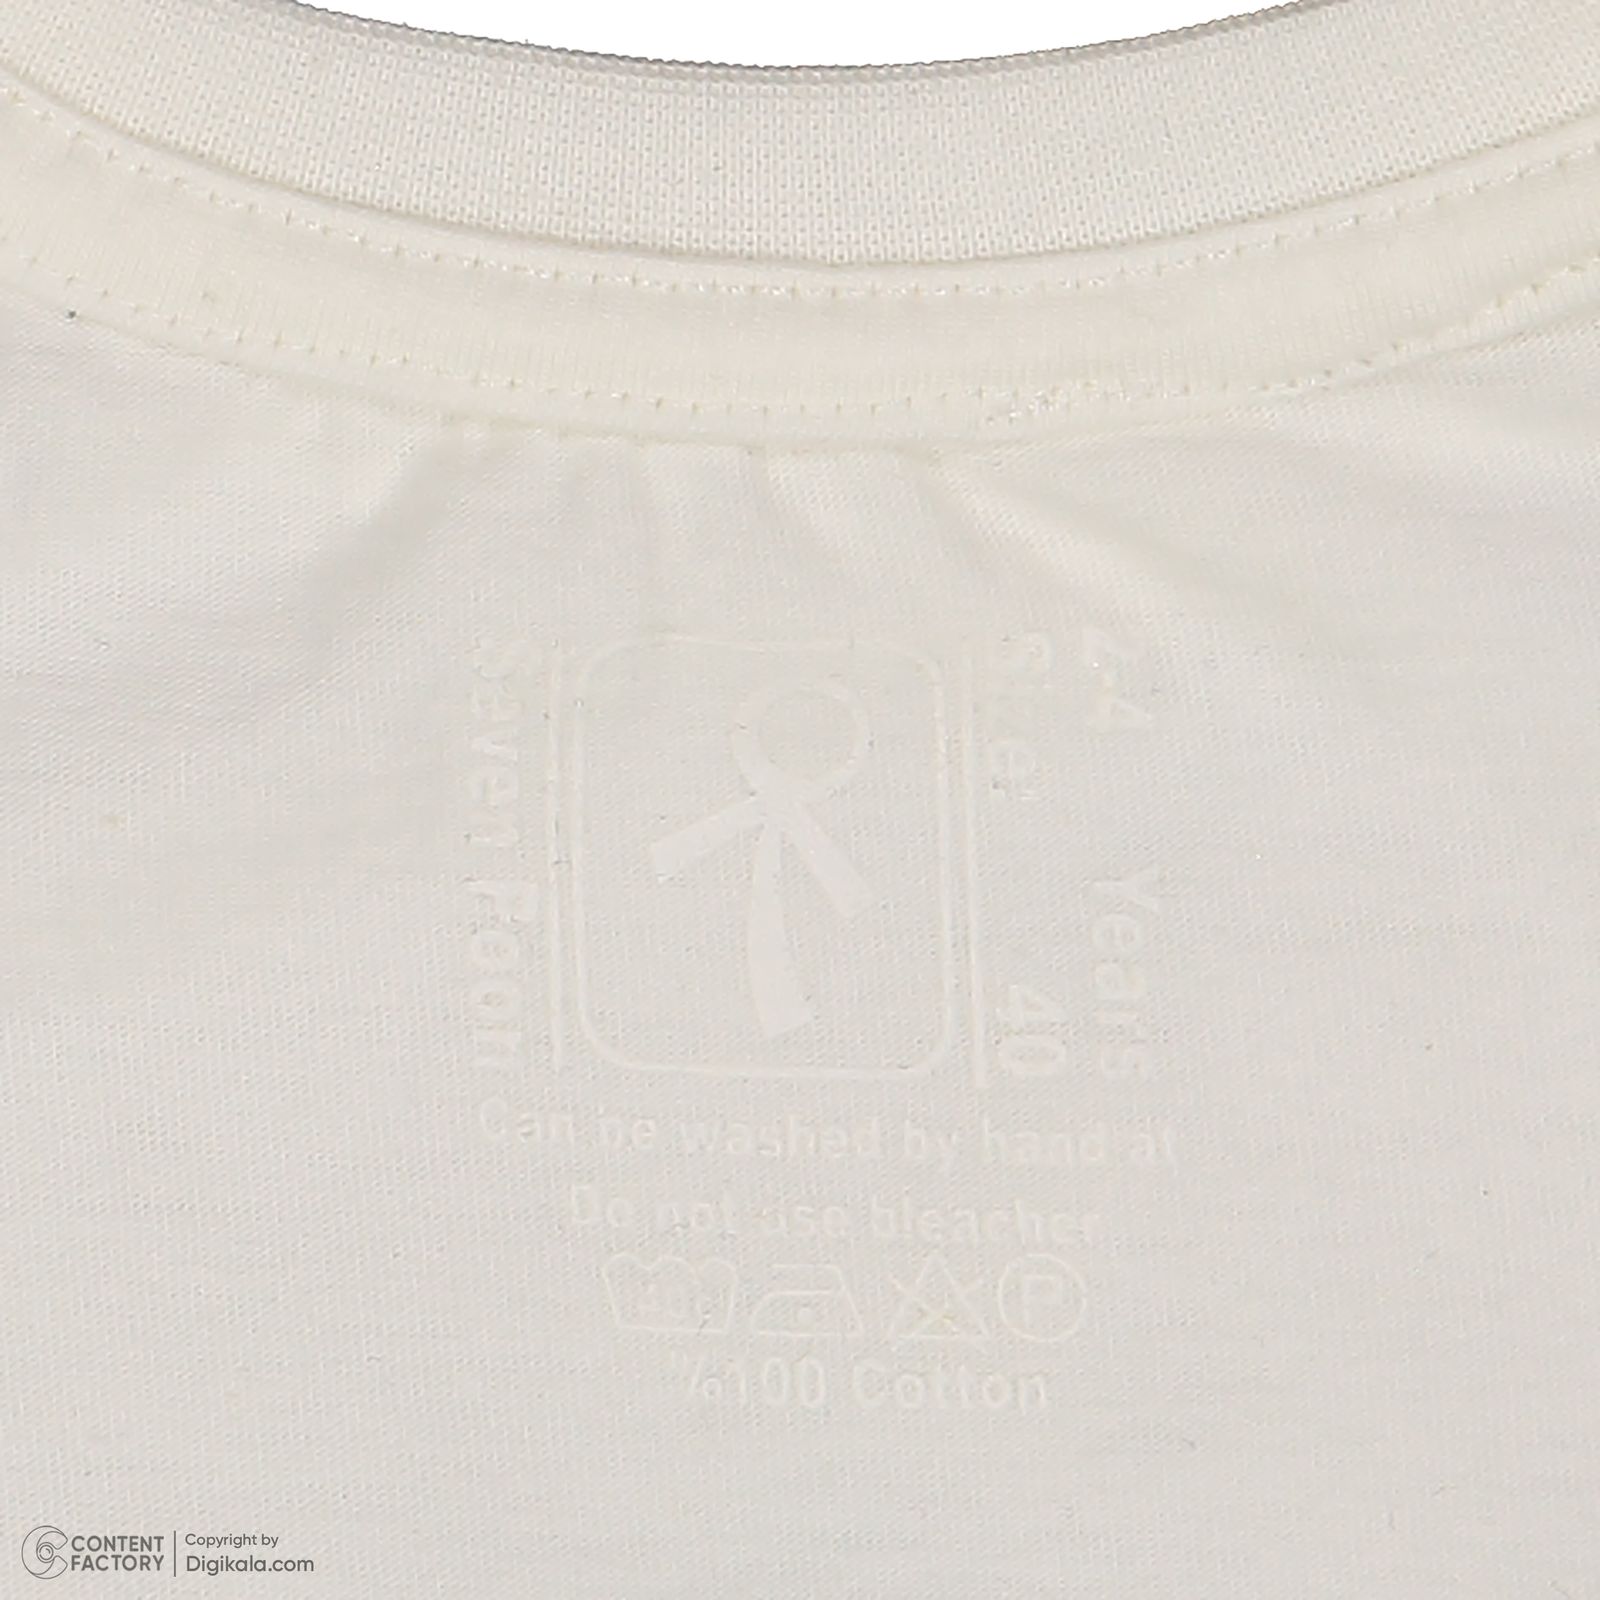 ست تی شرت و شلوارک پسرانه سون پون مدل 13911092 رنگ سفید -  - 6